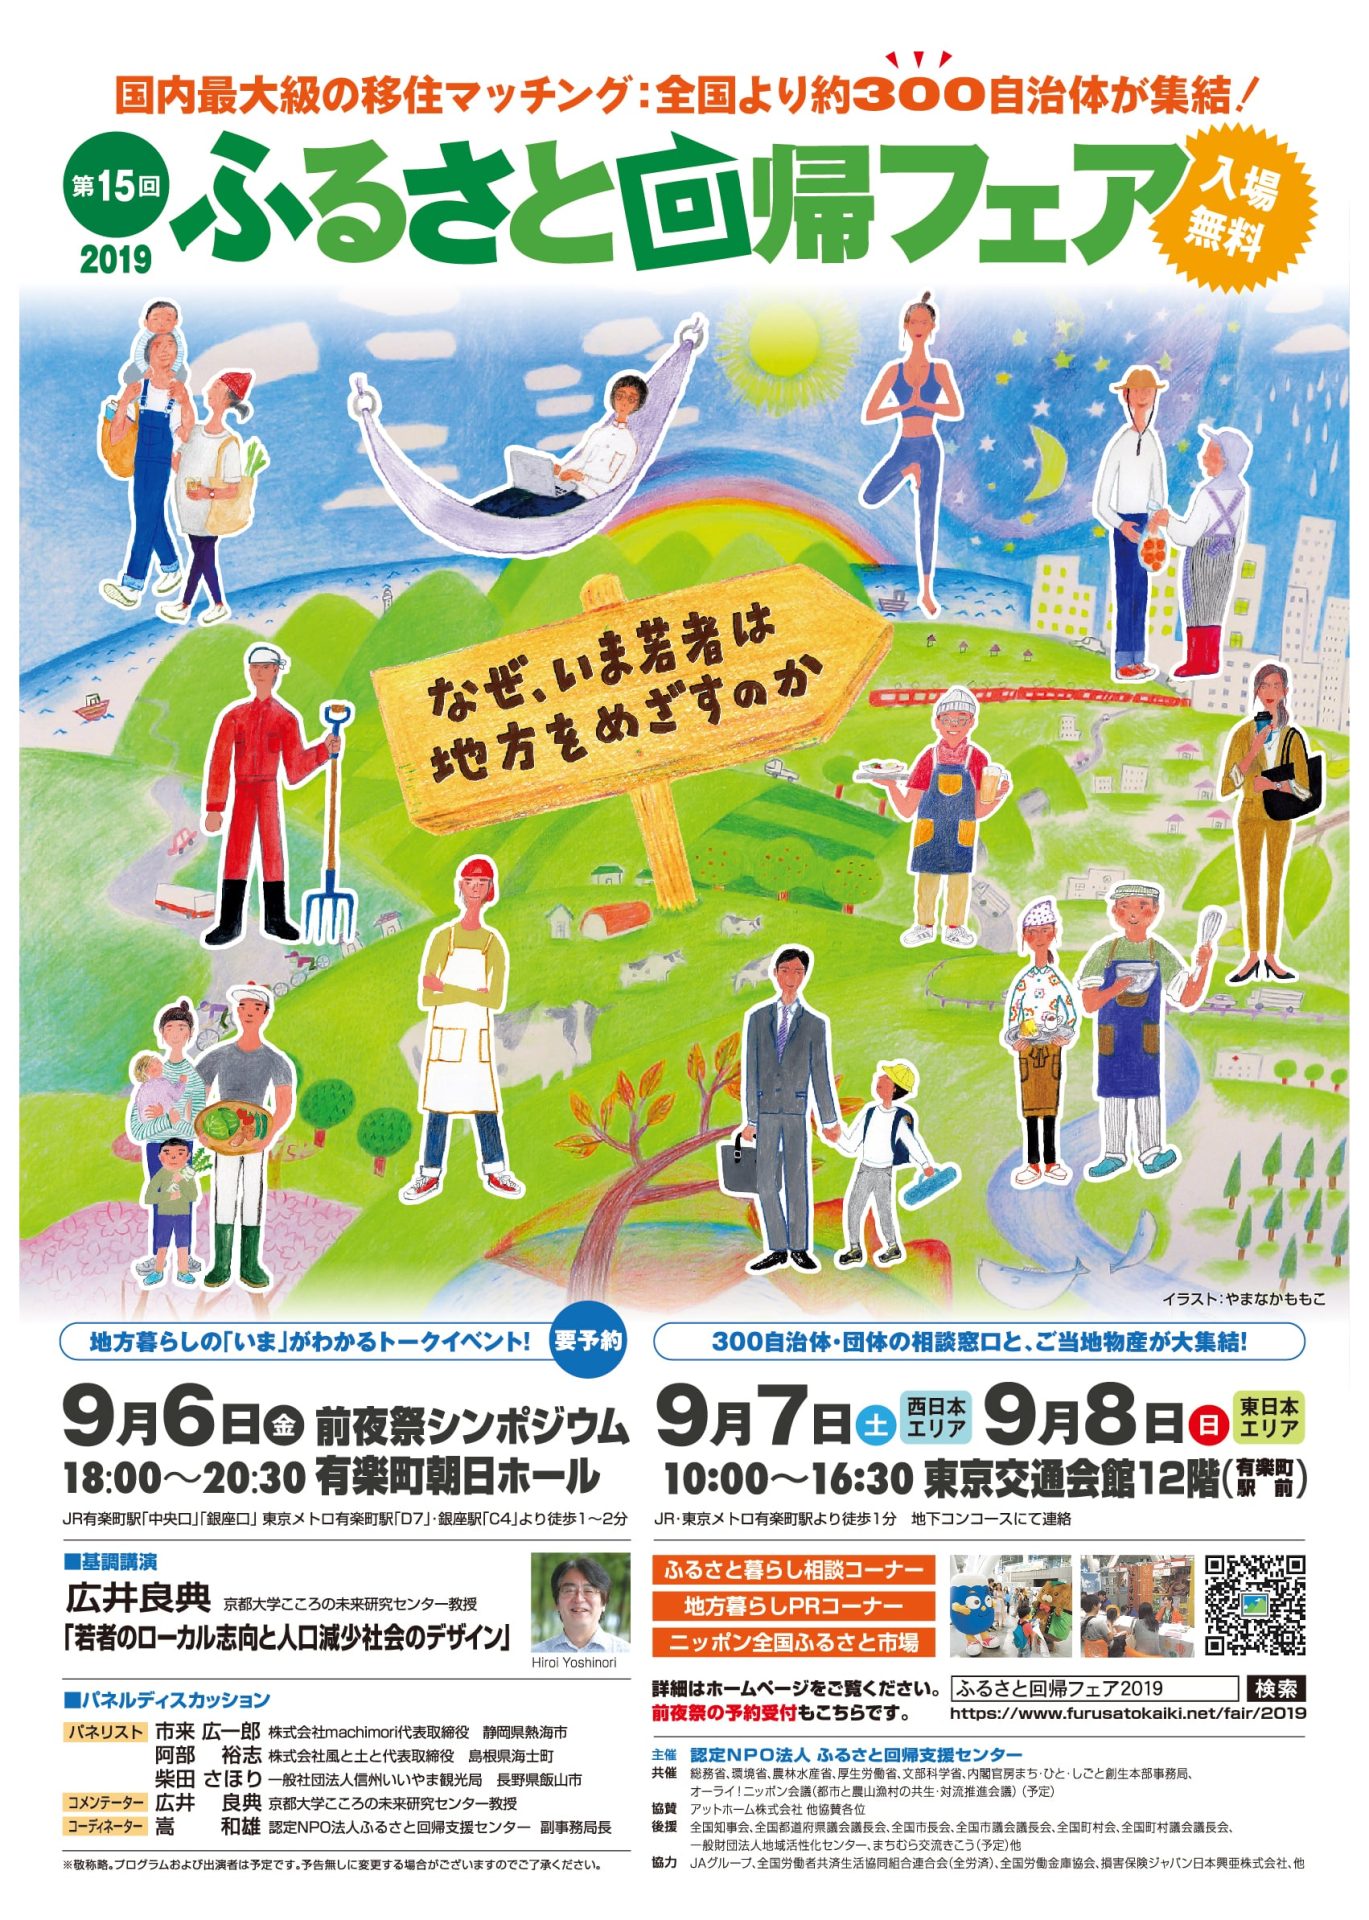 【東日本エリア】第15回 ふるさと回帰フェア2019<br>～なぜ、いま若者は地方をめざすのか～ | 移住関連イベント情報